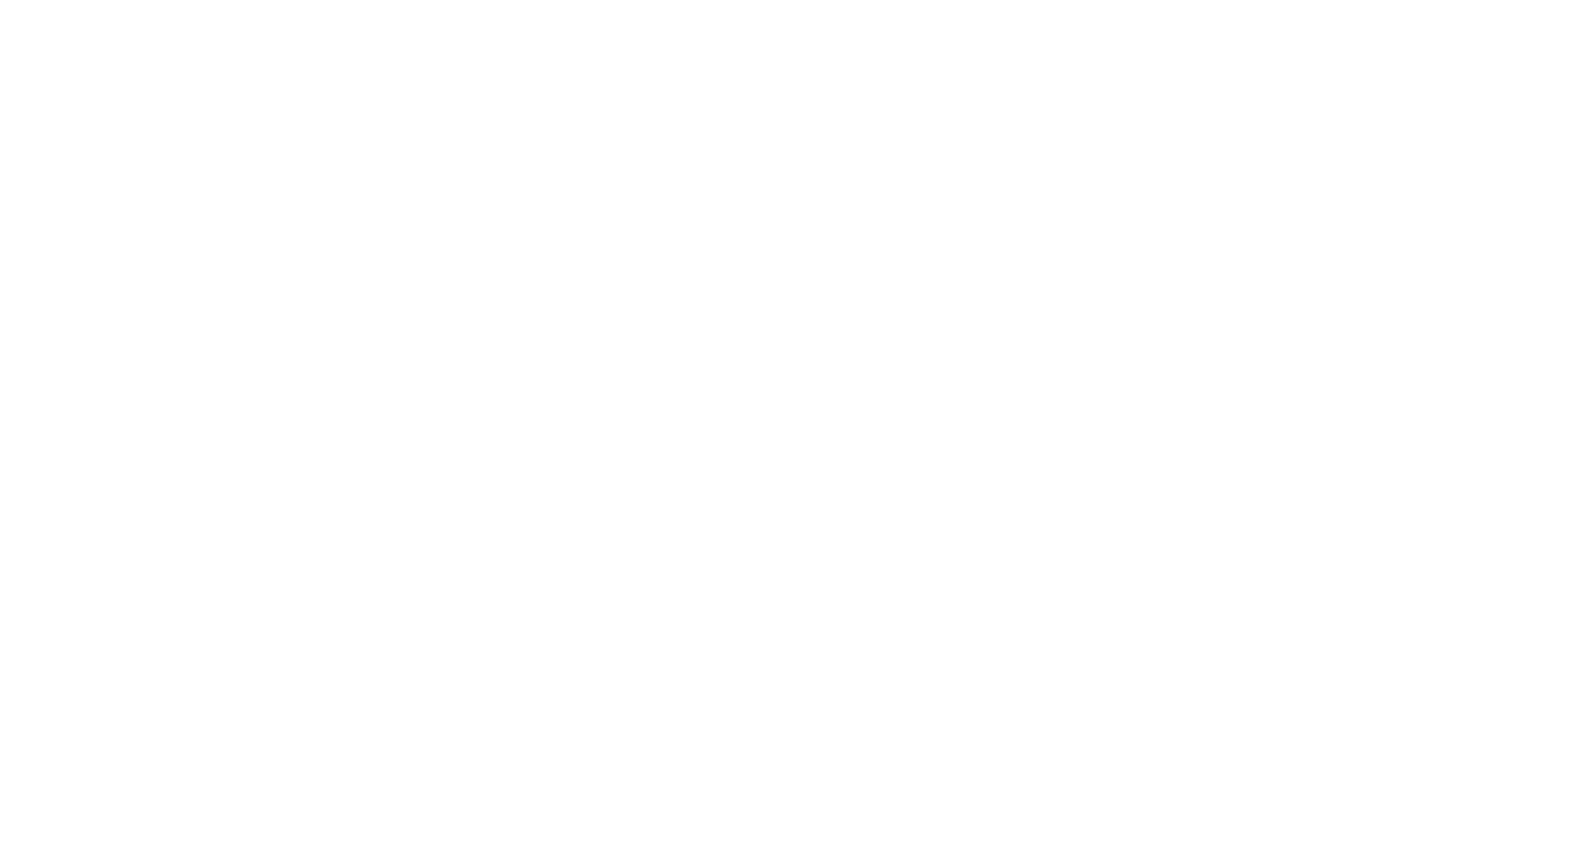 The Movie Emperor logo